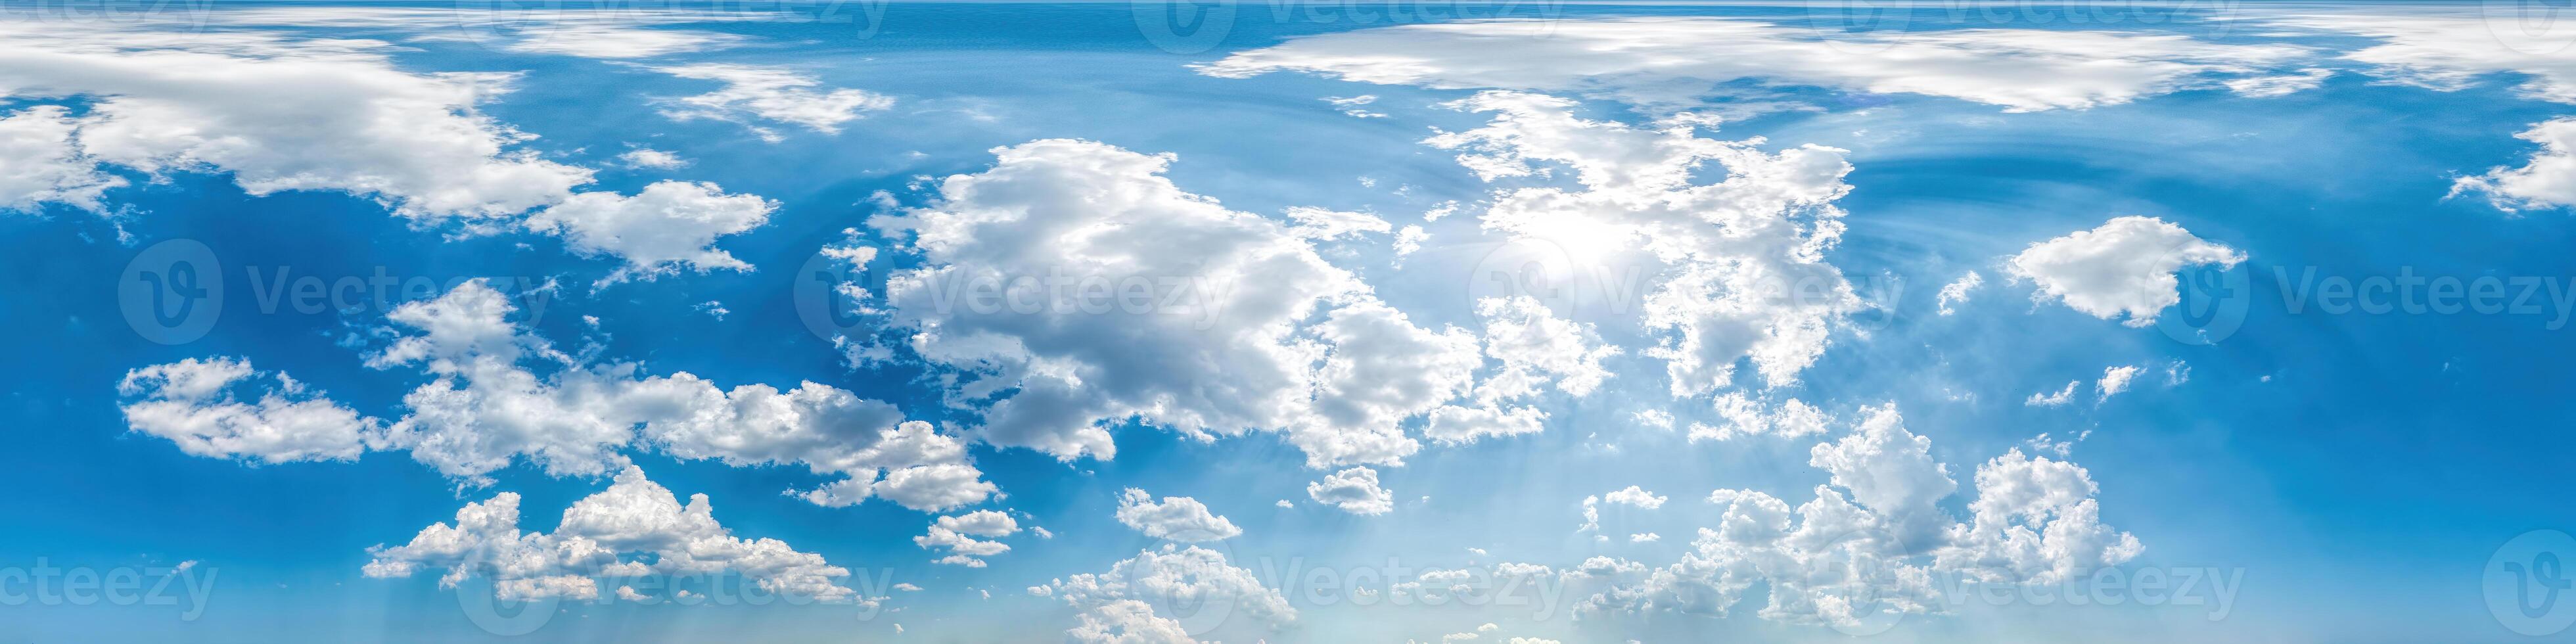 naadloos panorama van lucht met gezwollen cumulus wolken in bolvormig equirectangular formaat met compleet zenit voor gebruik in 3d grafiek, spel en composieten in antenne dar 360 mate panorama's net zo lucht koepel foto